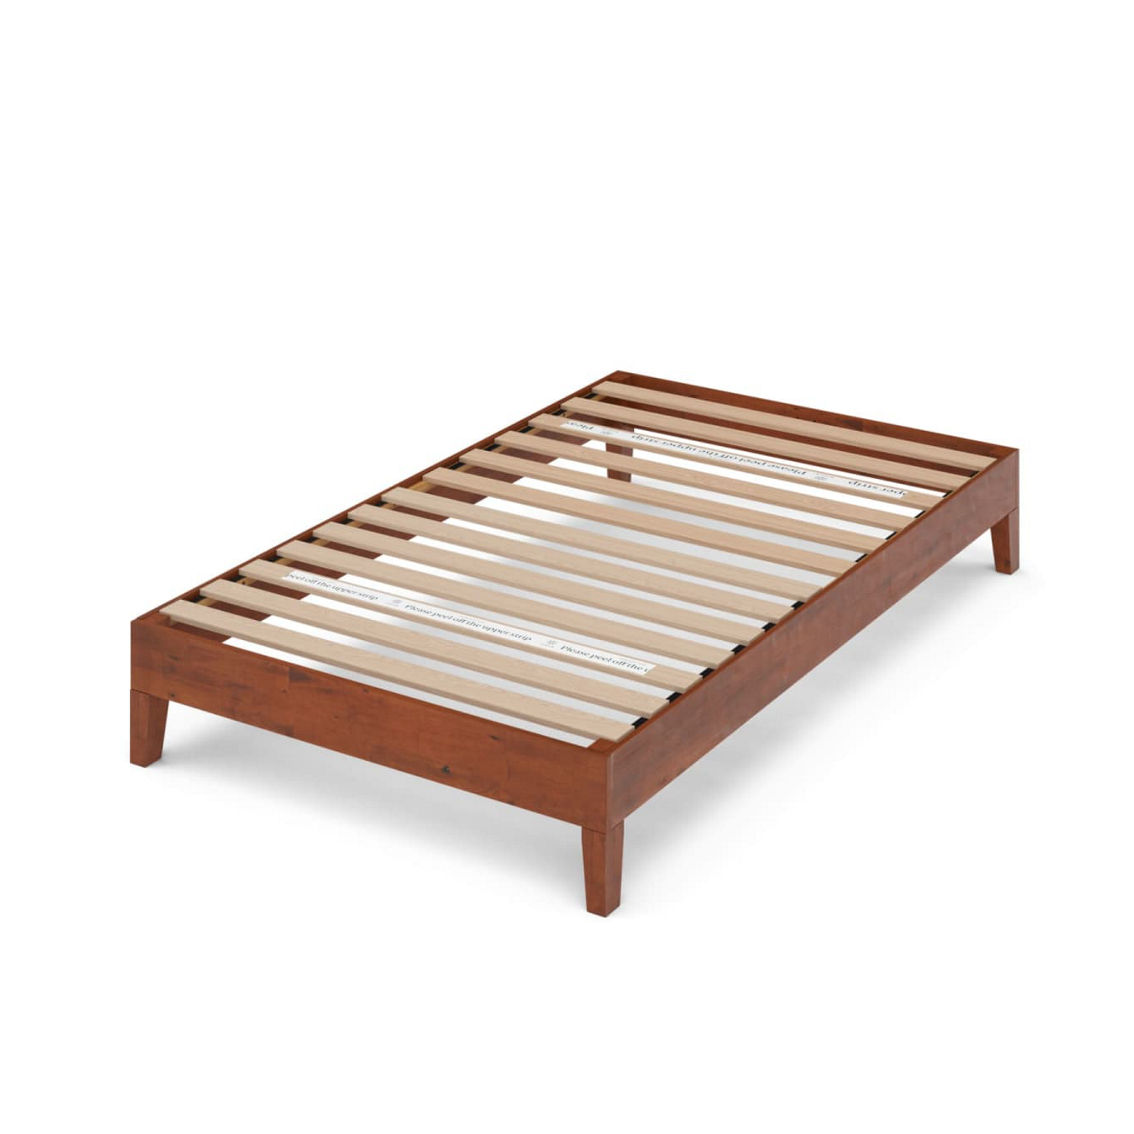 Zinus Solid Wood Platform Bed, Deluxe - Image 3 of 3